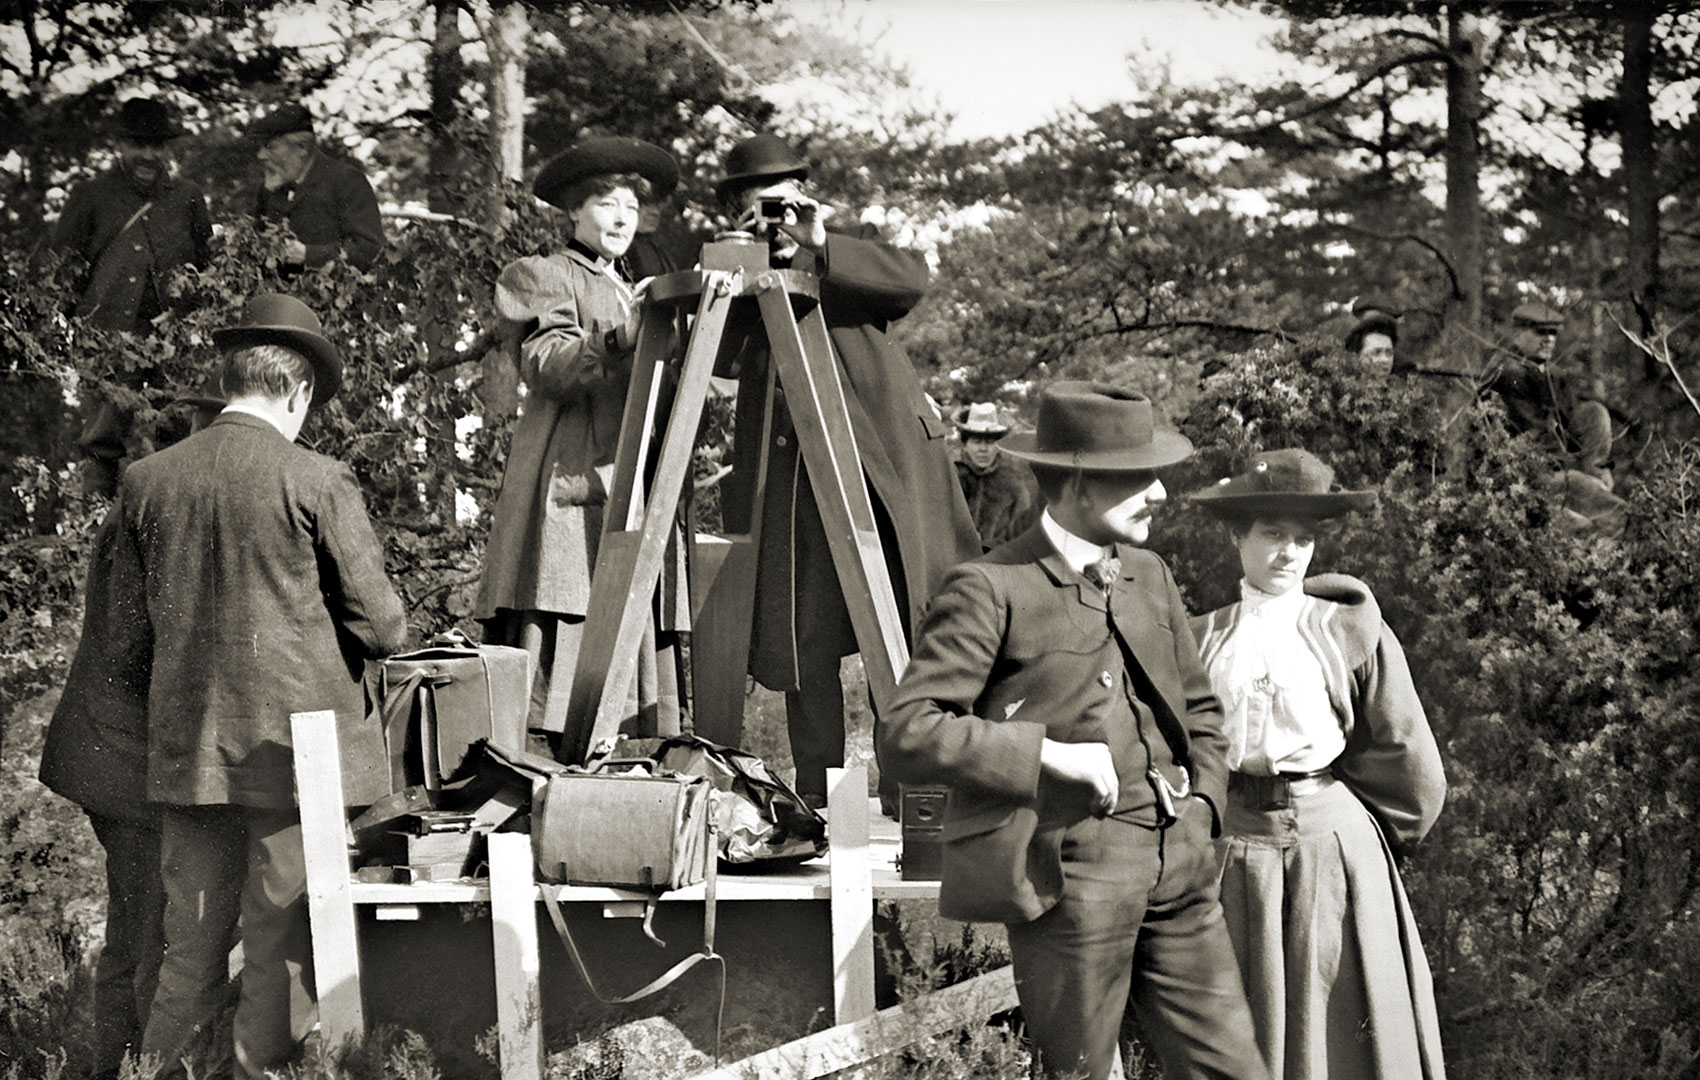 Schwarz-Weiß-Bild mit Filmteam Anfang des 20. Jahrhunderts. An der Kamera steht eine Frau.